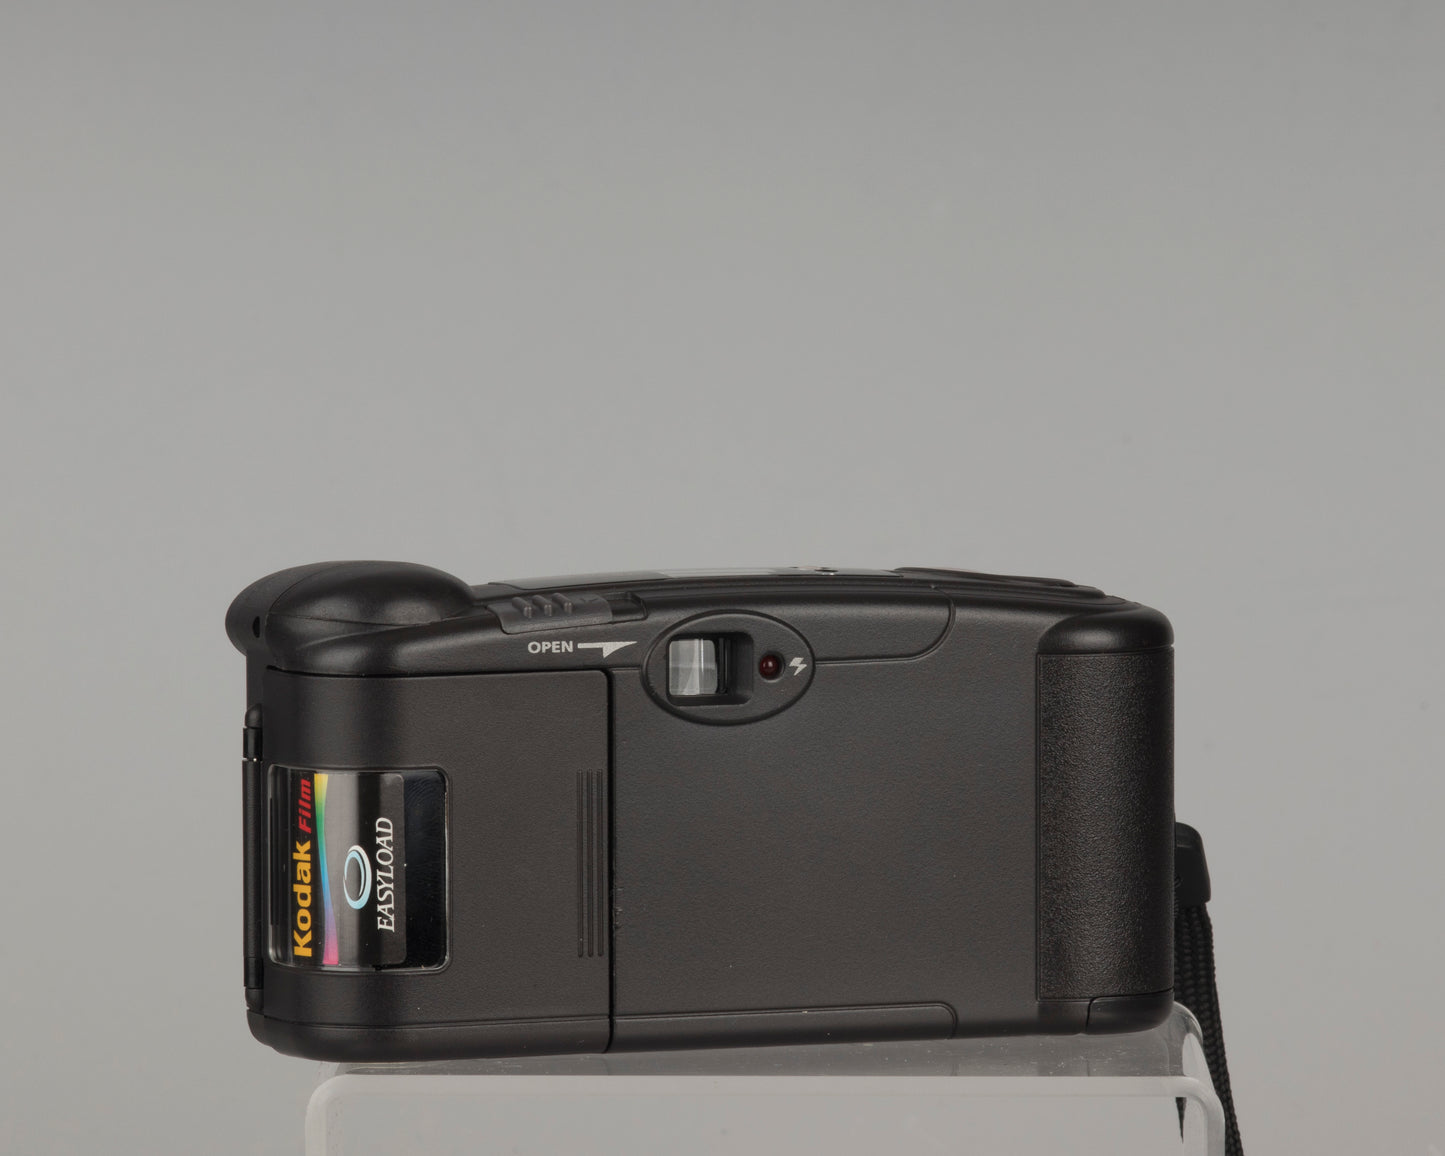 Appareil photo Kodak KE40 Easyload 35 mm avec étui